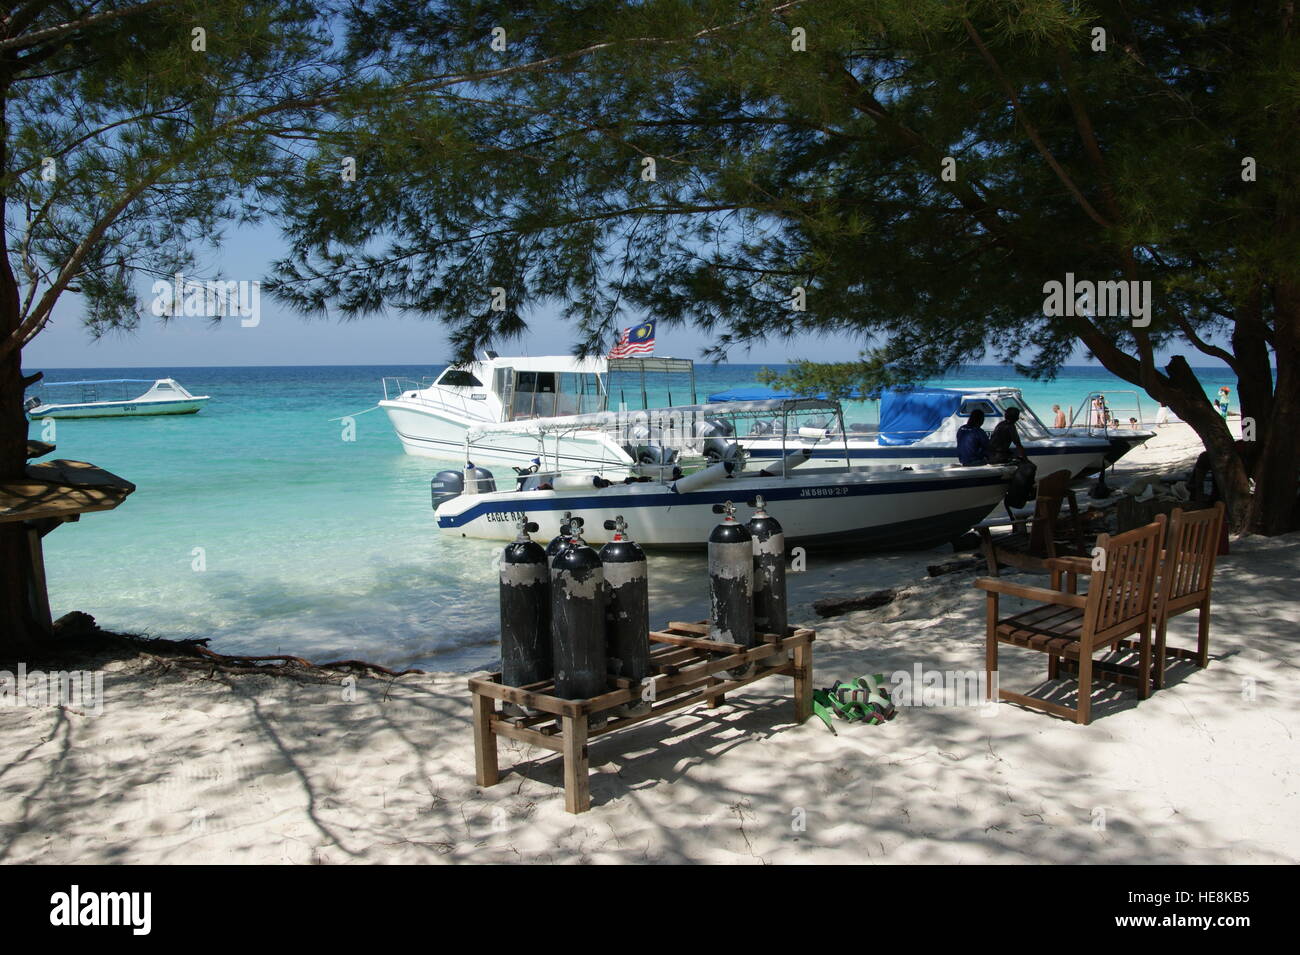 Schnorcheln, Tauchen und Strand Urlaub auf der Insel Mantanani. Tropischen Strand.  Sabah, Malaysia, South China Sea Stockfoto